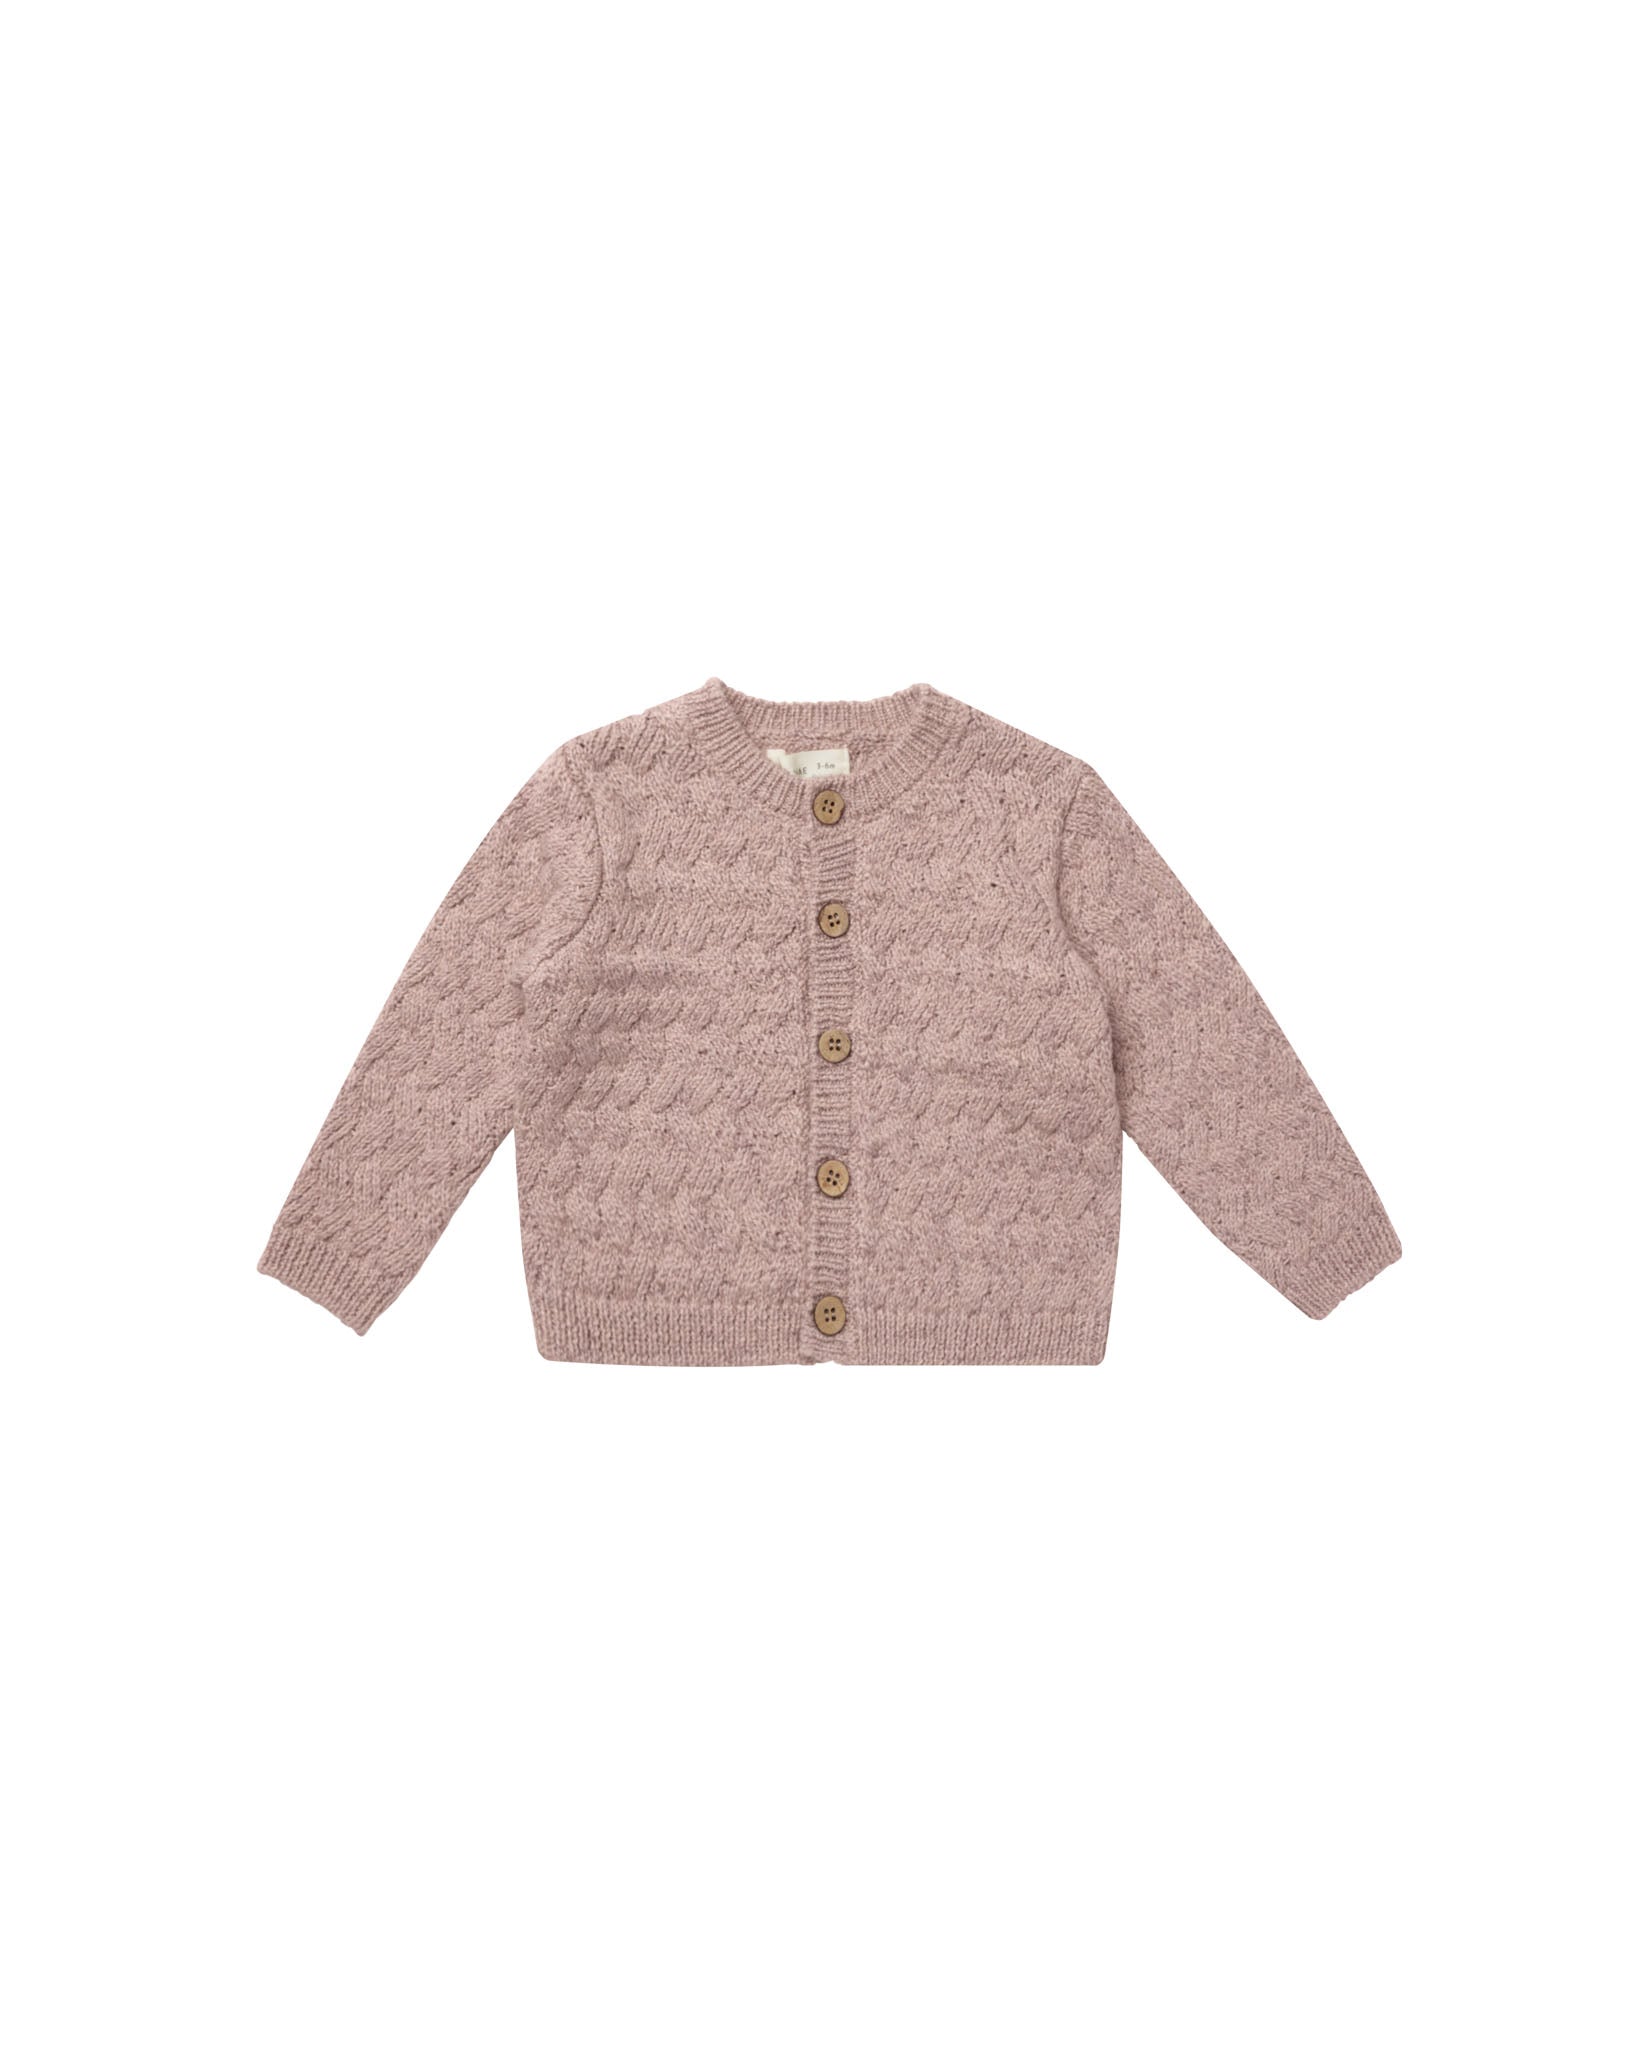 Mauve Knit Cardigan & Bloomer Set - Twinkle Twinkle Little One